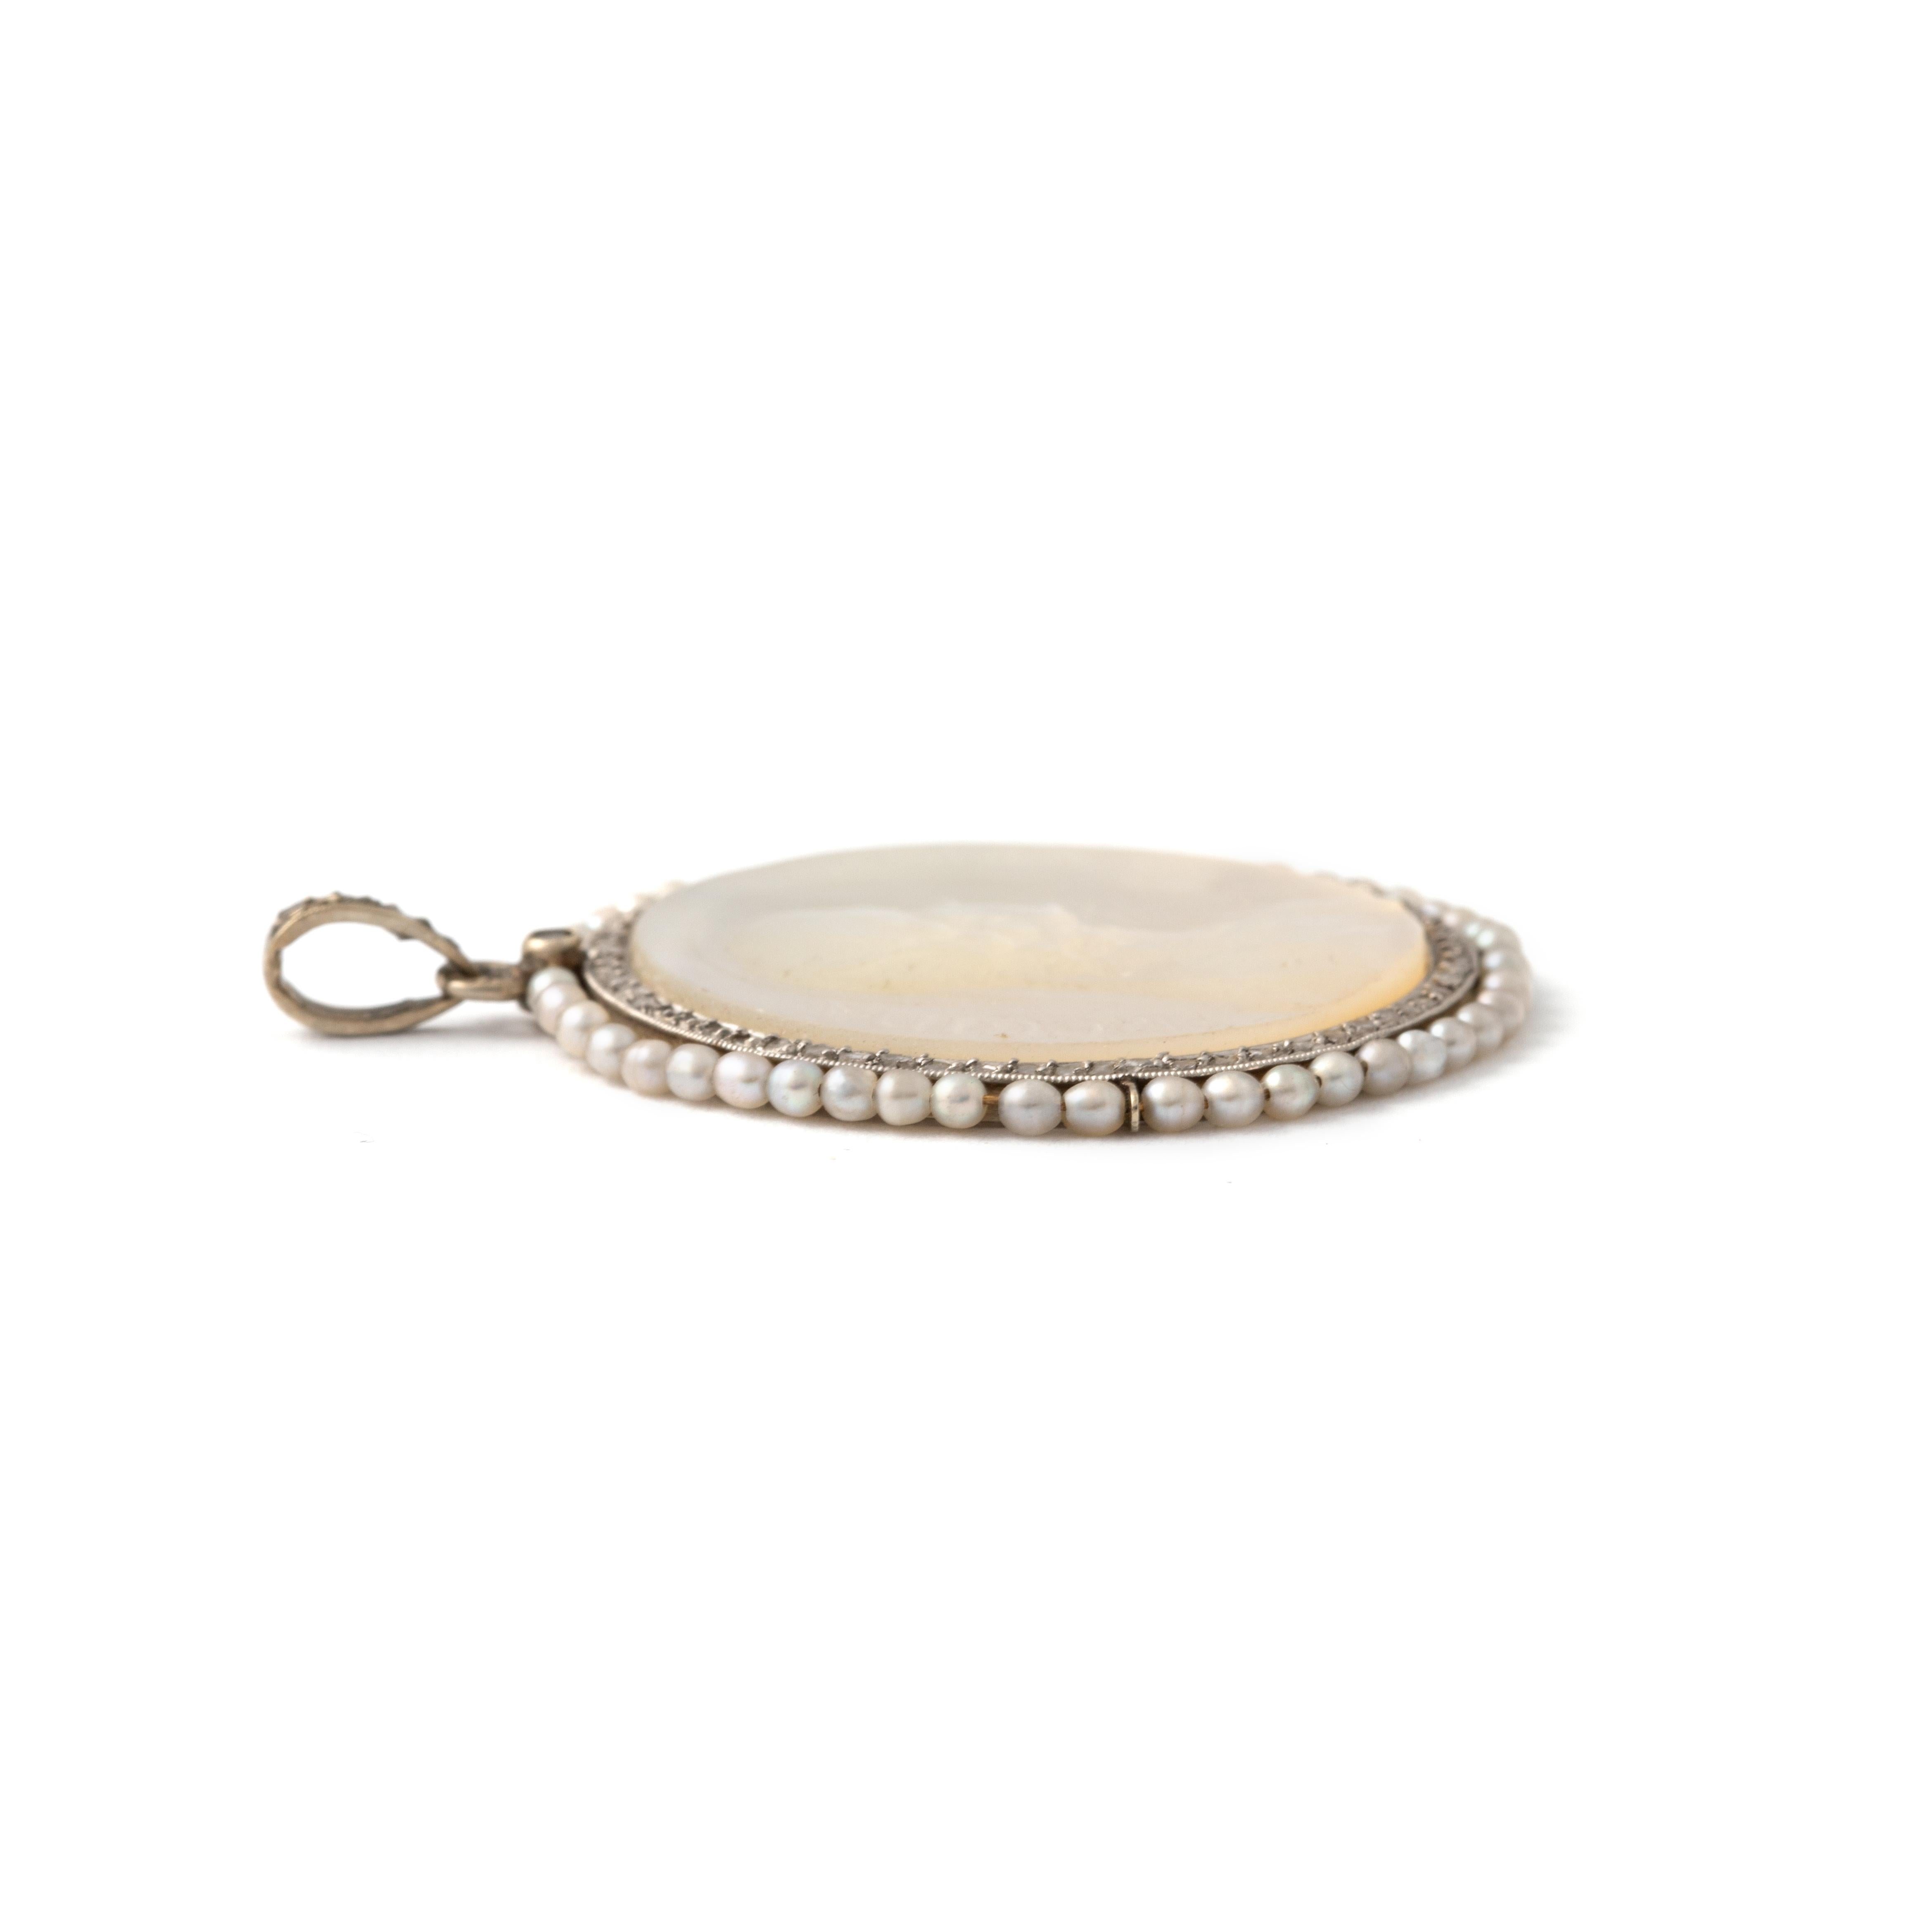 Pendentif en nacre, diamant taillé en rose et perle sur or blanc représentant Regina Caeli. 
20ème siècle.

Longueur totale : environ 3,70 centimètres.
Largeur totale : environ 3,00 centimètres.

Poids total : 6.18 grammes.
